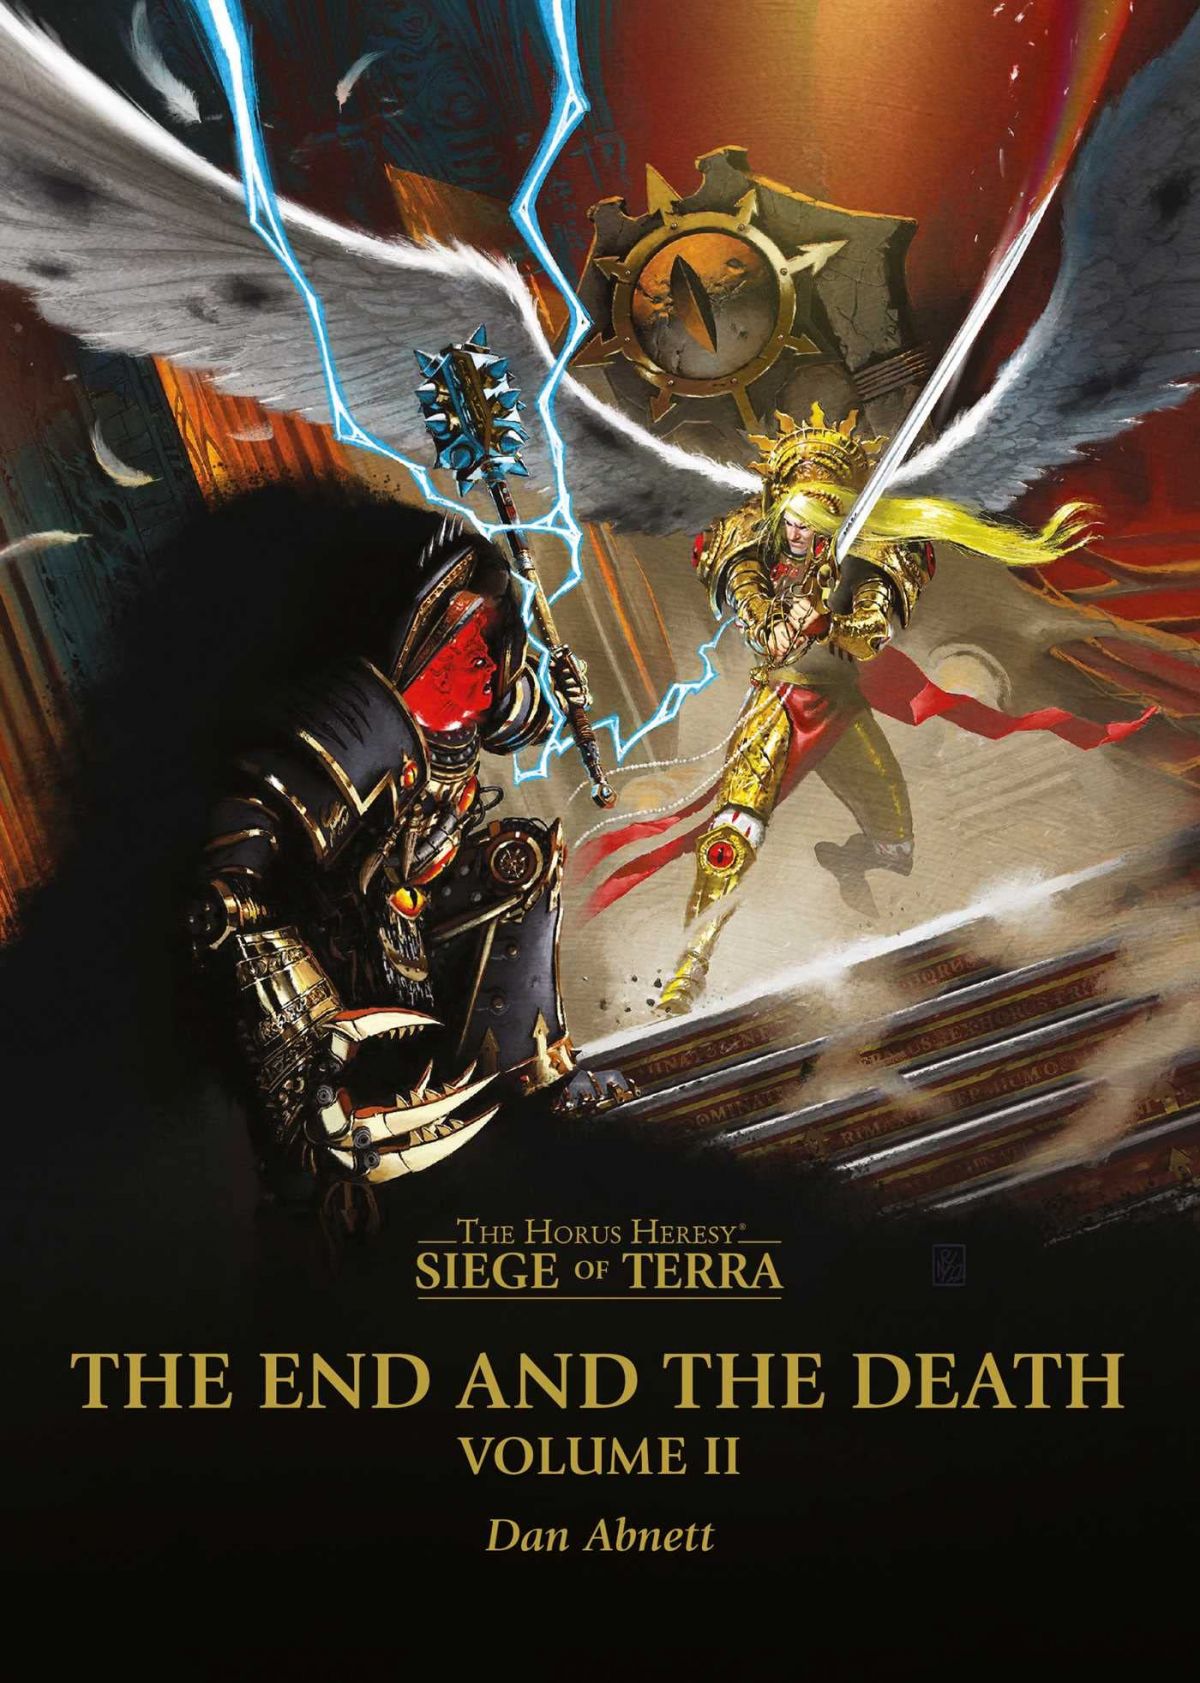 Конец и Смерть, Том 2 / The End and the Death, Volume II (роман) — перевод  на русский язык из Warpopedia, Гильдии переводчиков вселенных Warhammer